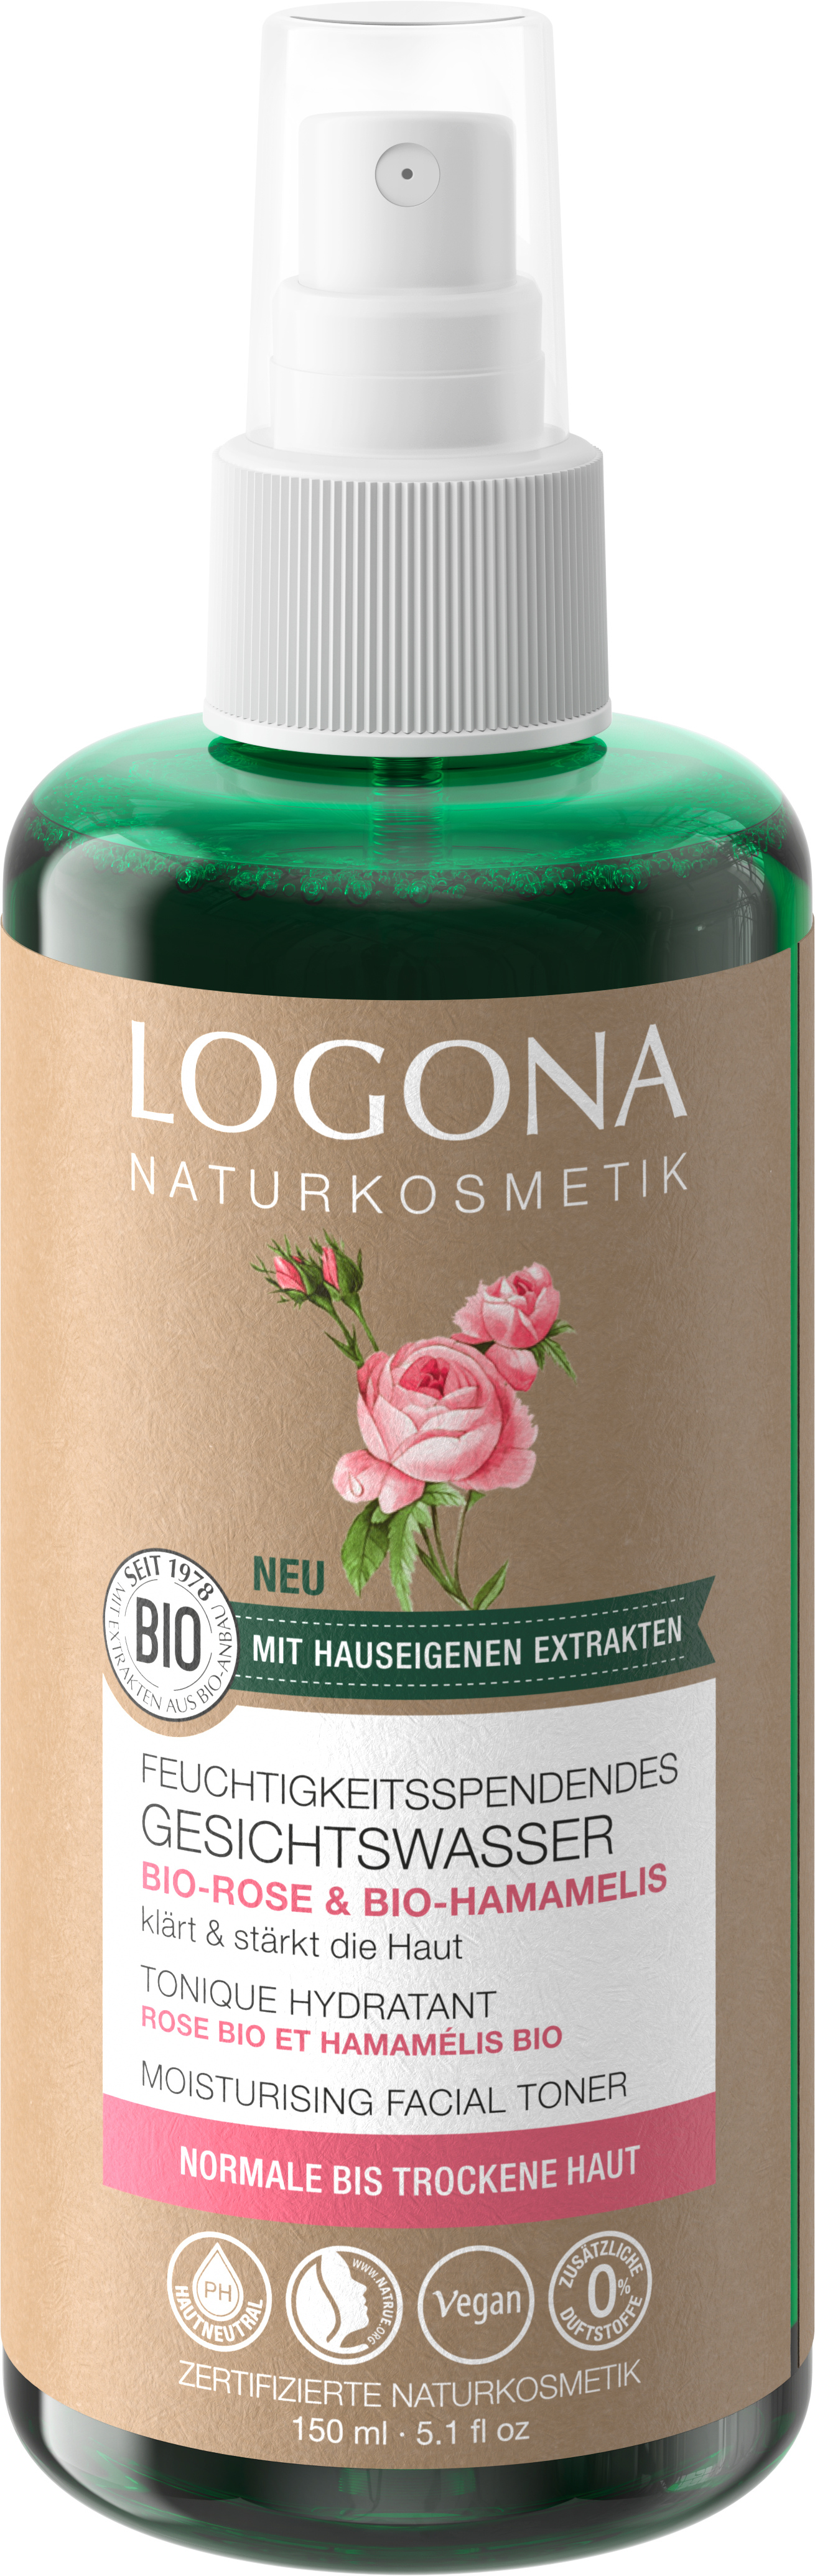 Bio-Hamamelis Bio-Rose LOGONA | Gesichtswasser Feuchtigkeitsspendendes & Naturkosmetik